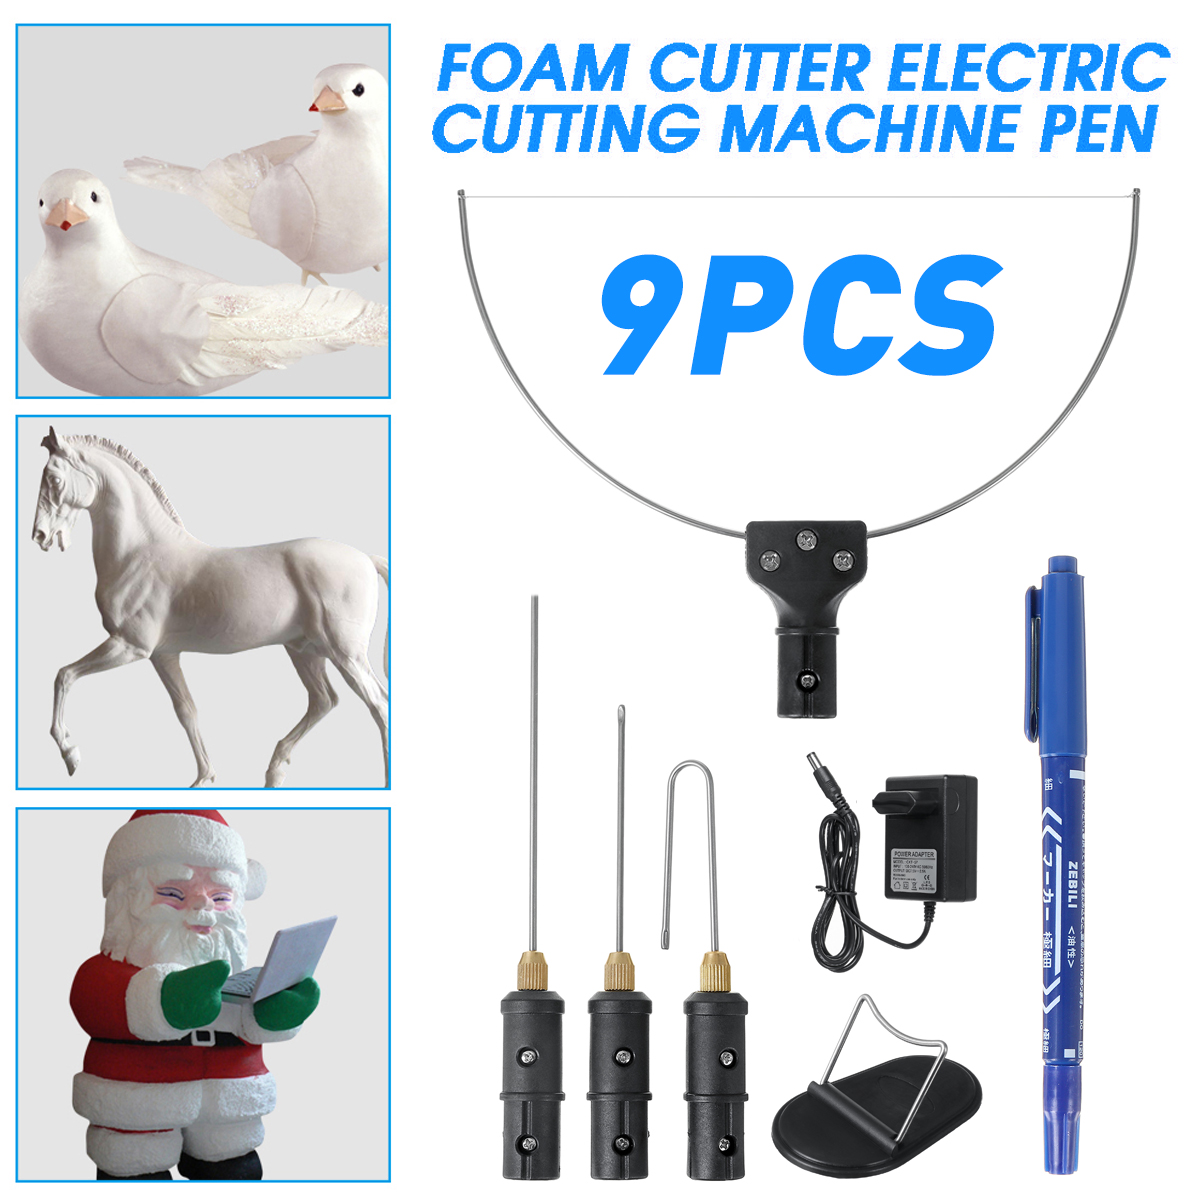 Electric-Foam-Cutter-3-in-1-Foam-Cutter-Electric-Cutting-Machine-Pen-Tools-Kit-18W-Styrofoam-Cutting-1843526-10